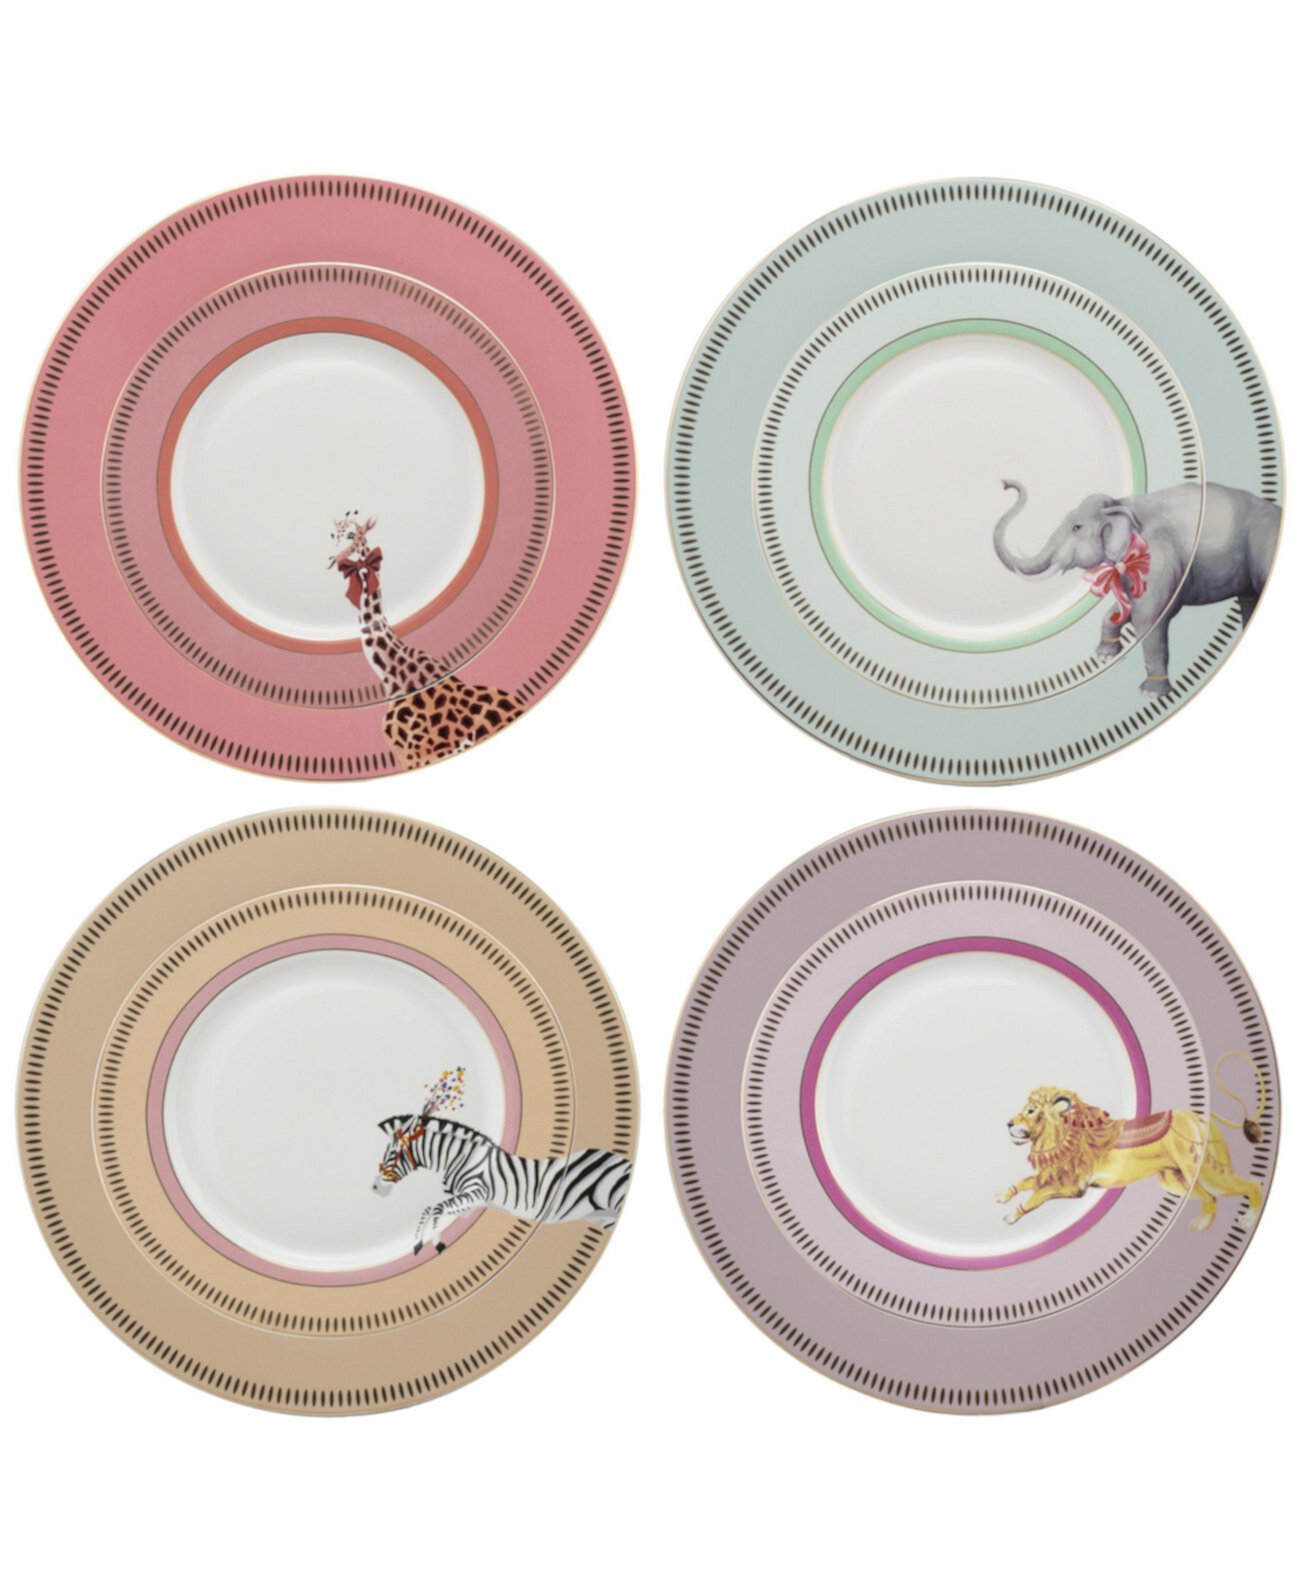 Обеденные тарелки с животными, набор из 4 шт. Yvonne Ellen